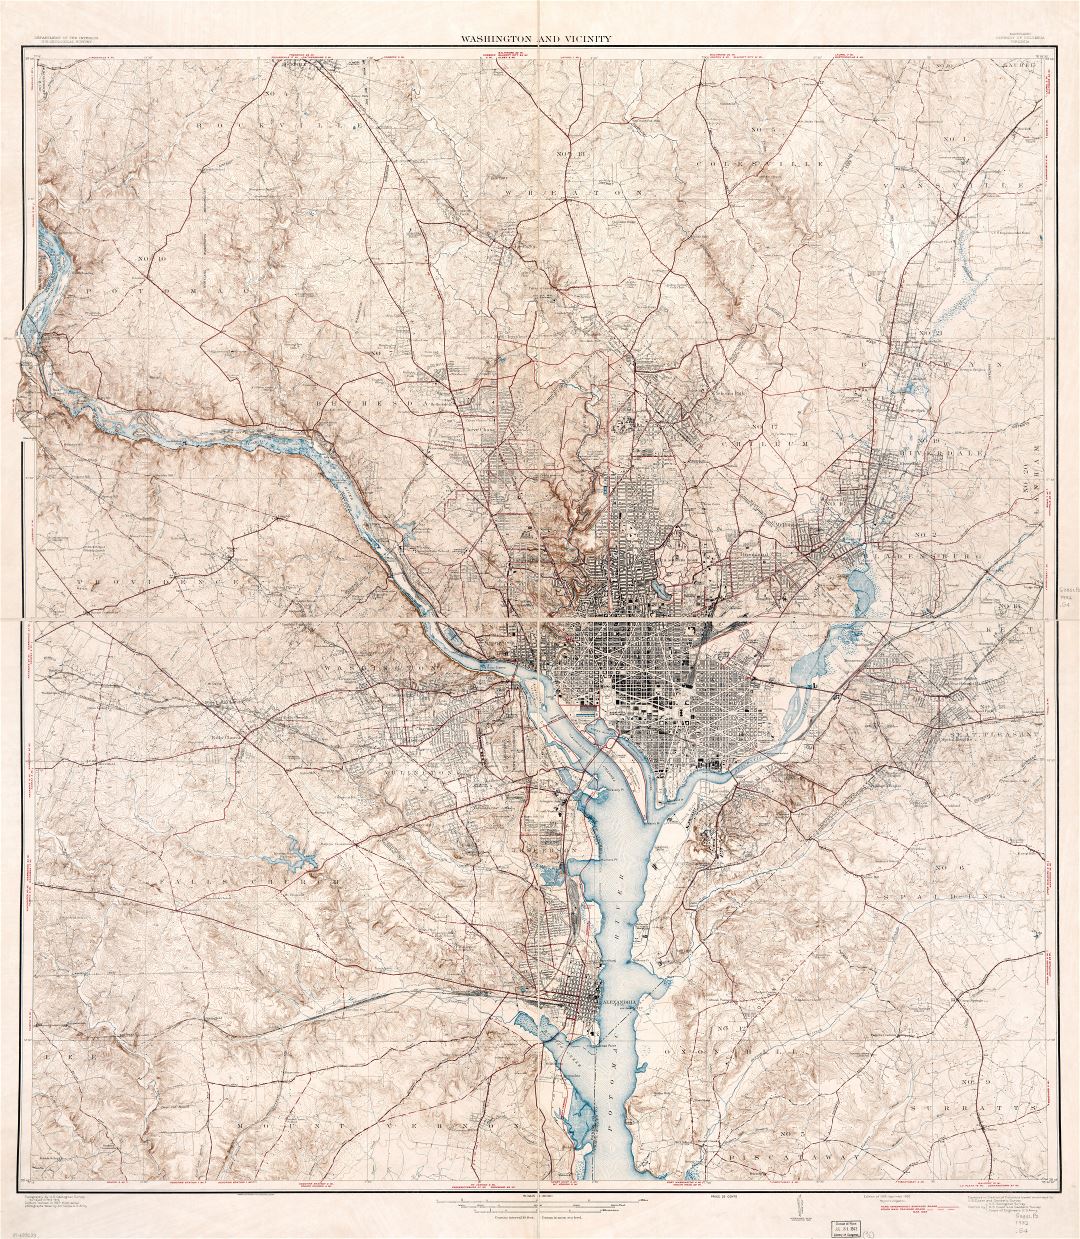 Крупномасштабная подробная старая карта Вашингтона и окрестностей, округ Колумбия, штат Мэриленд, Вирджиния - 1932